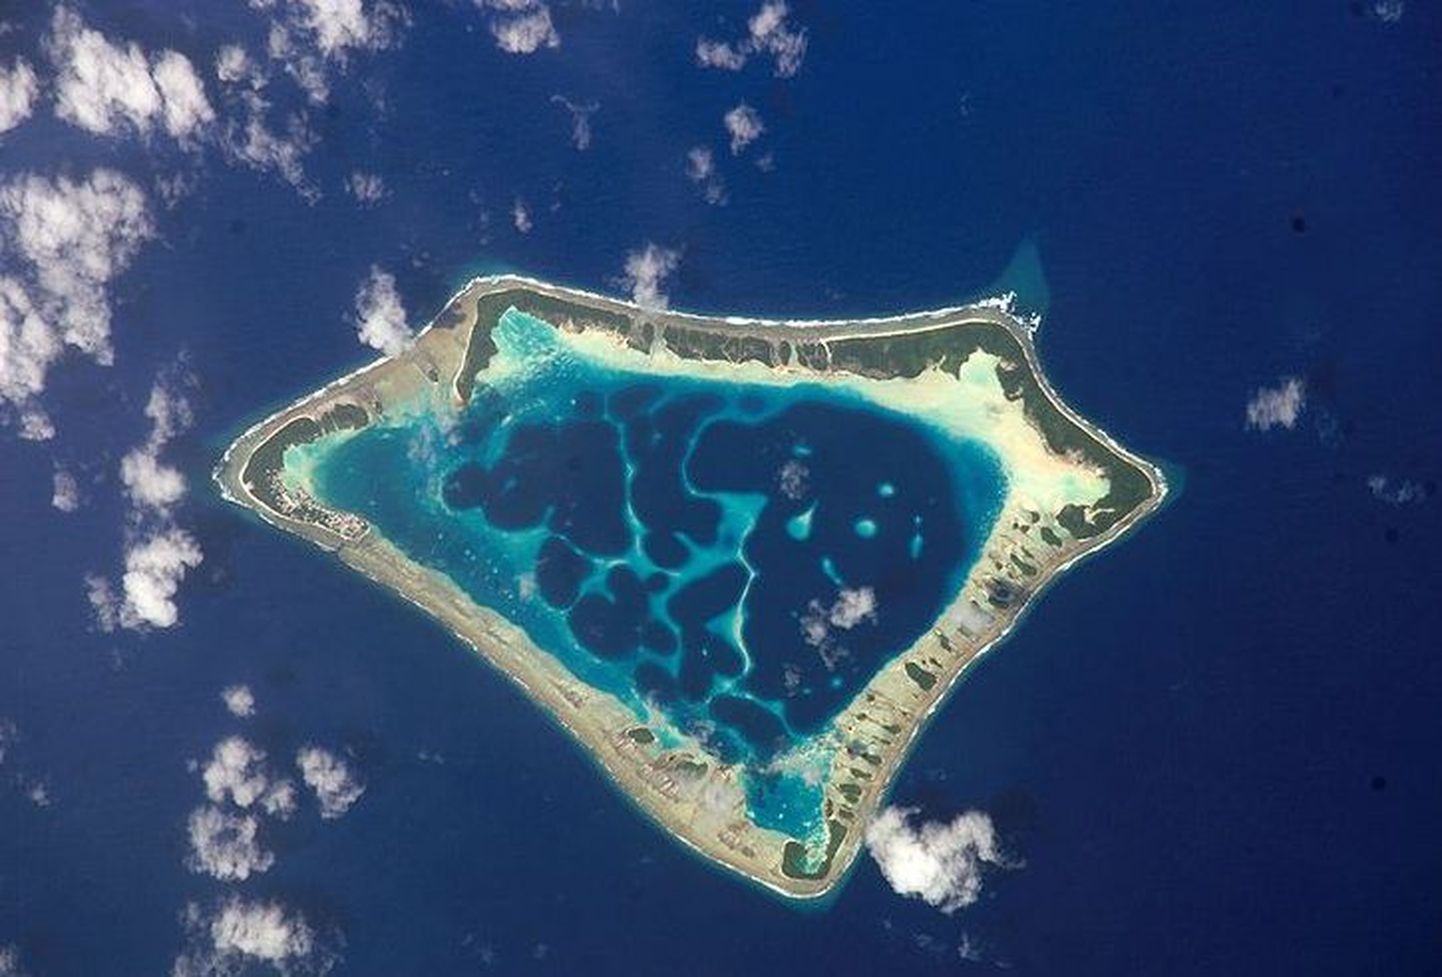 Atafu atoll